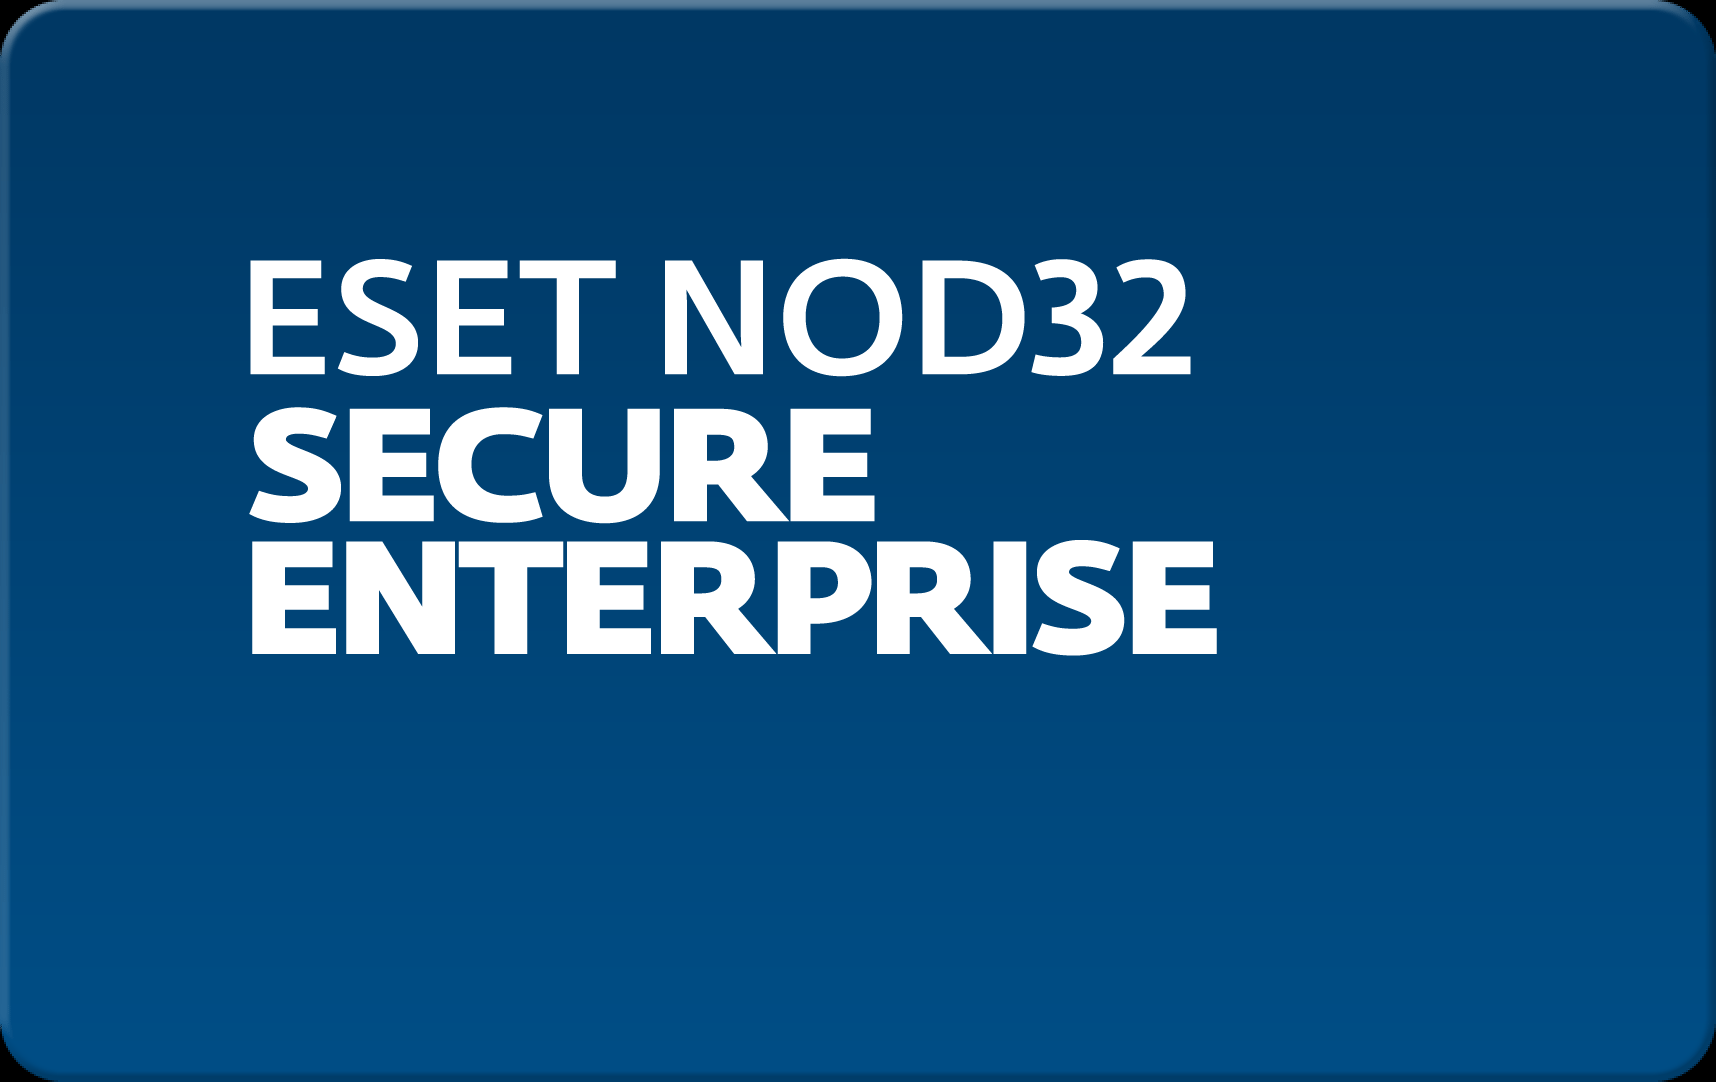        Eset NOD32 Secure Enterprise  192  NOD32-ESE-NS-1-192  #1